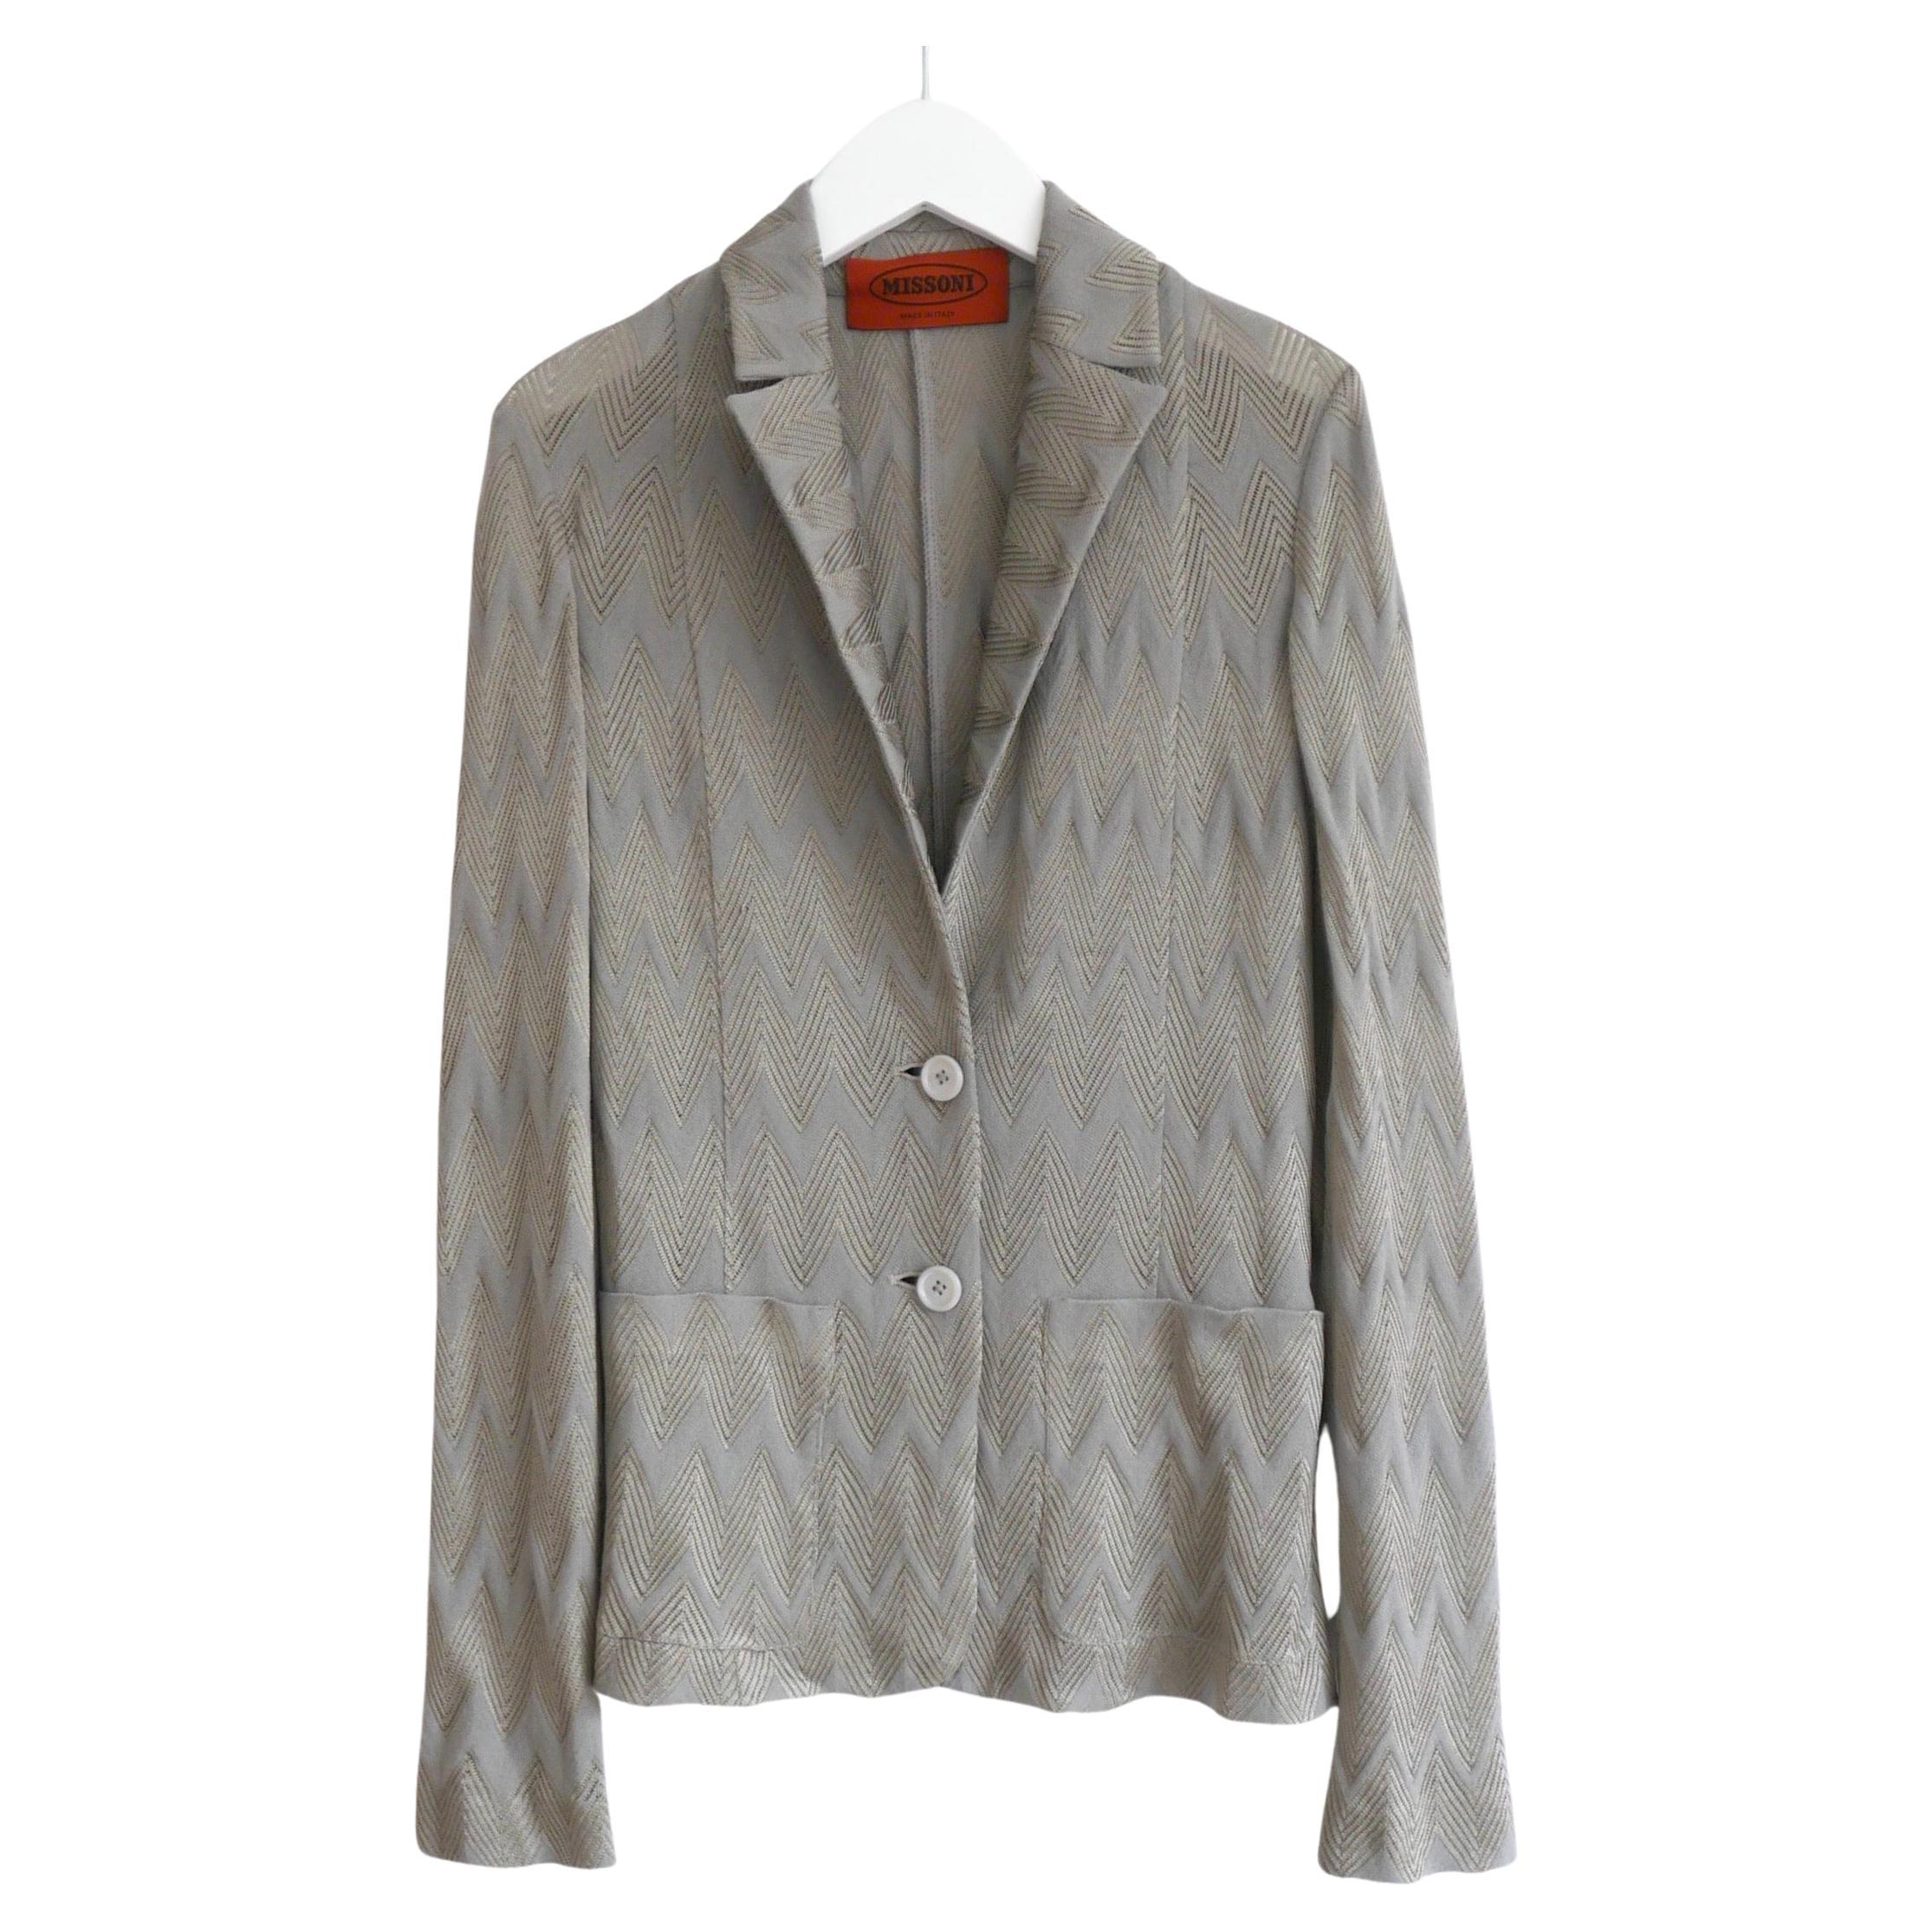 Missoni silver/grey zig zag knit blazer jacket For Sale